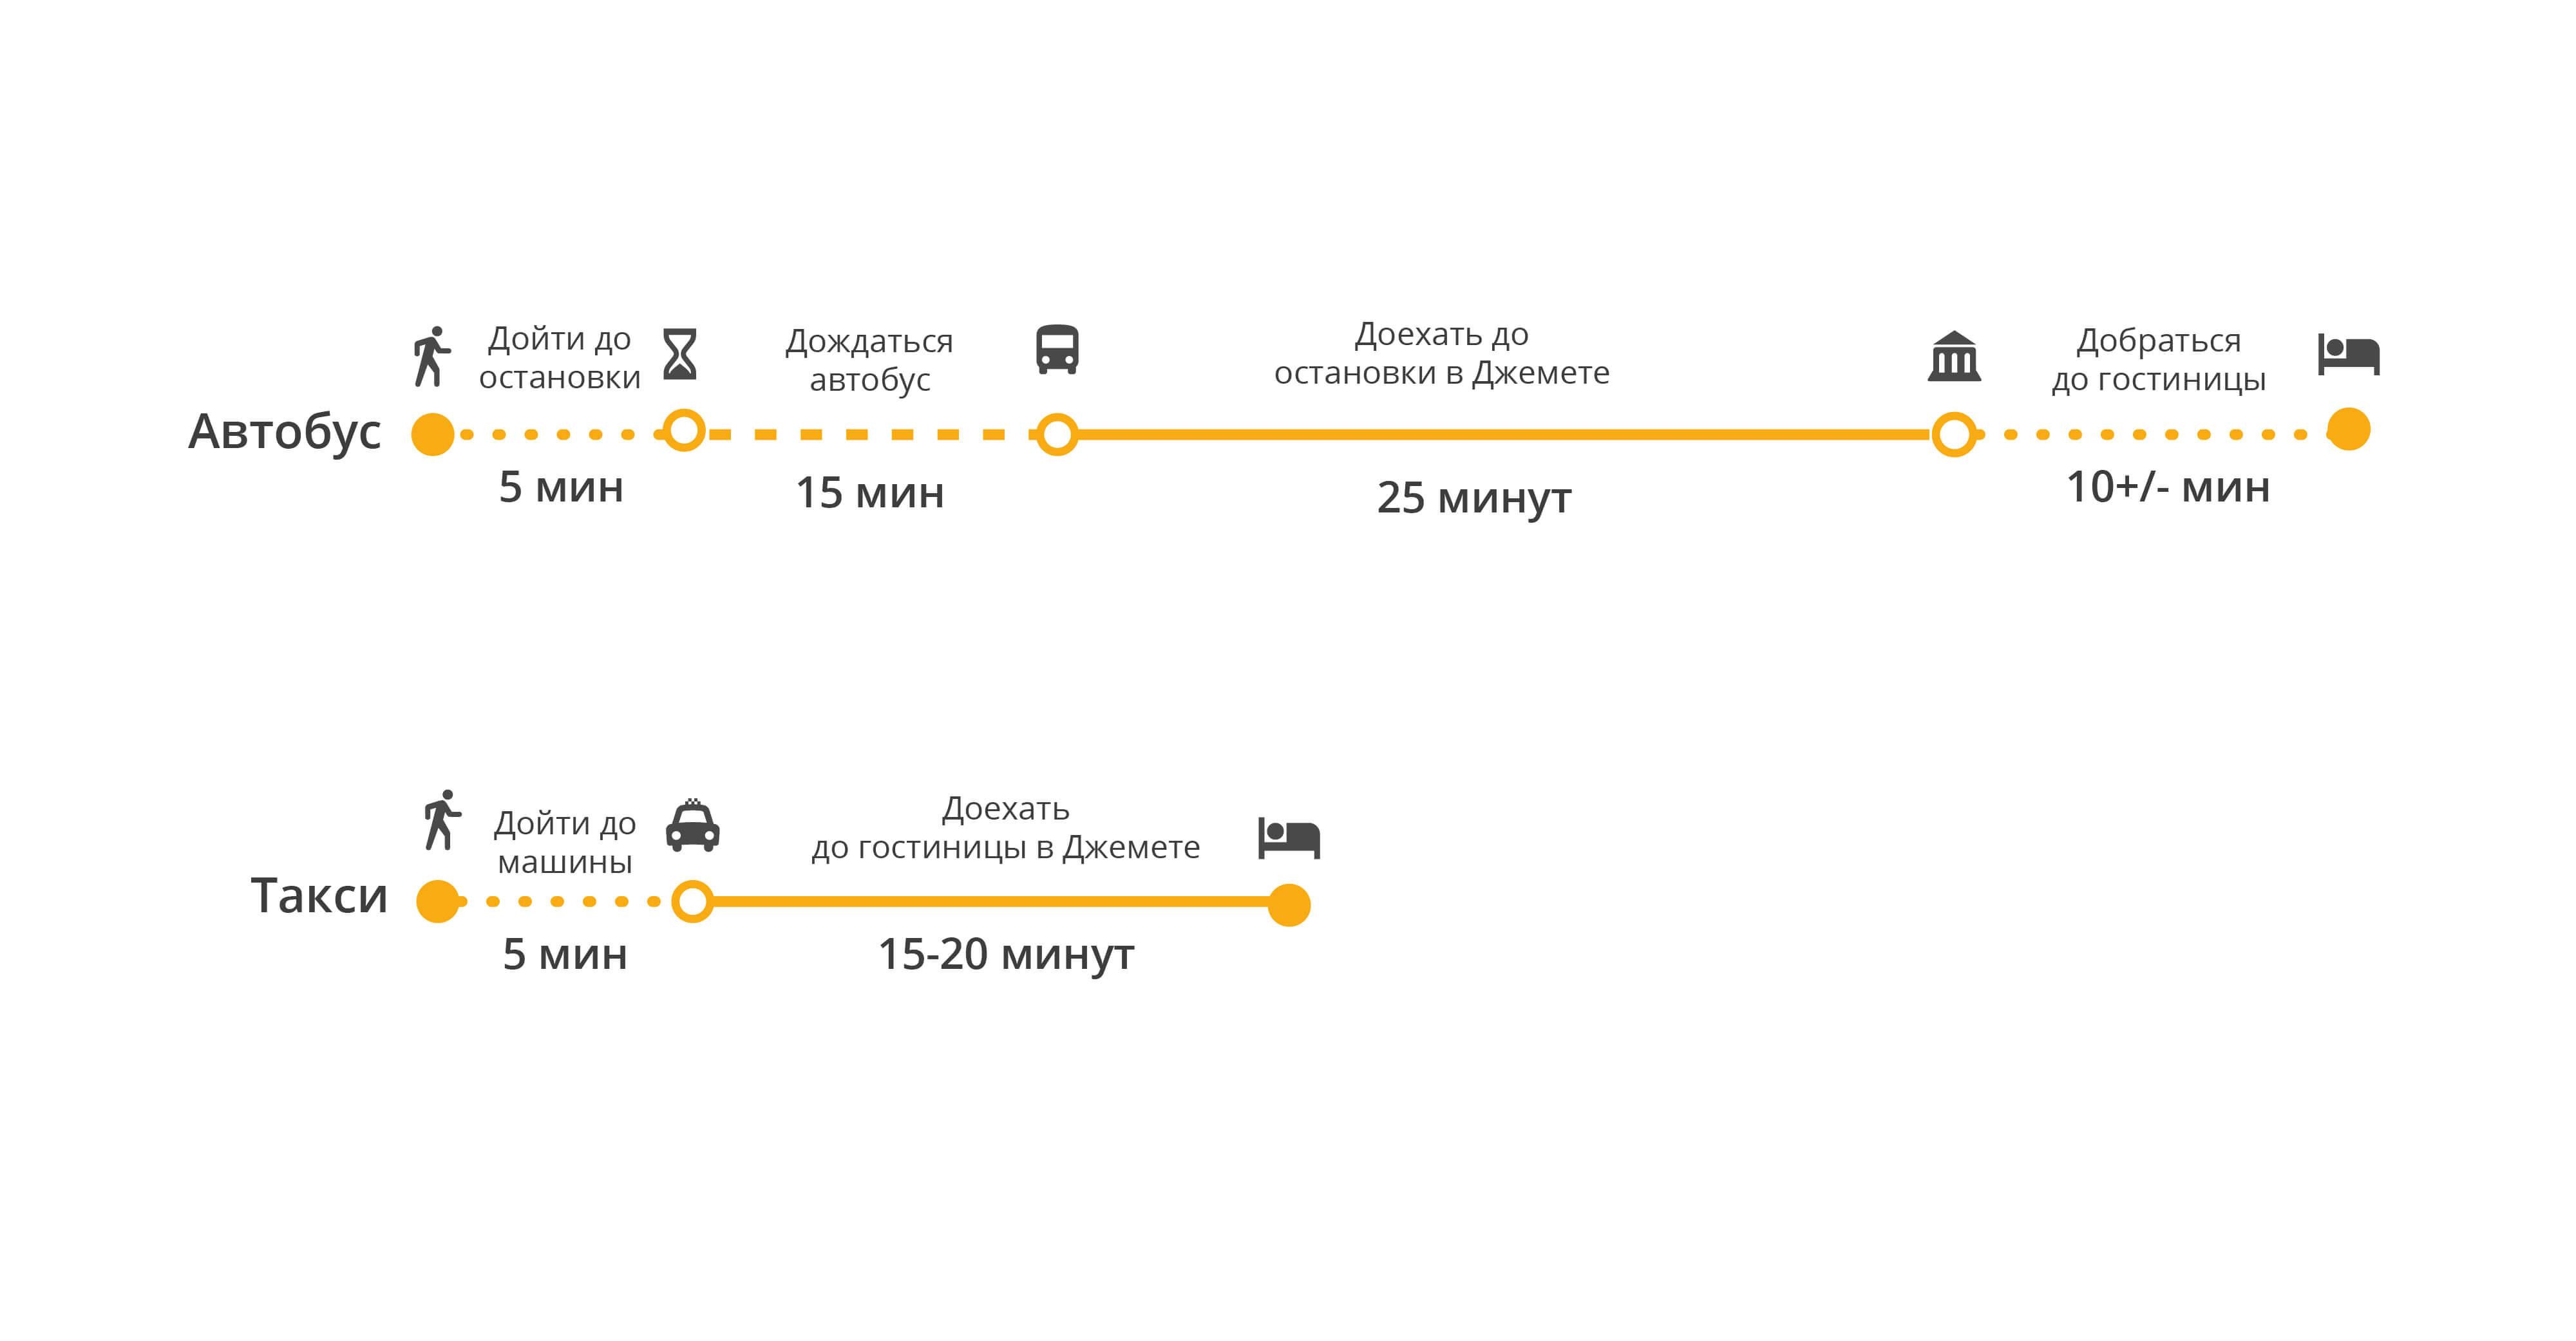 Все подробности об автобусах и маршрутных такси в анапе